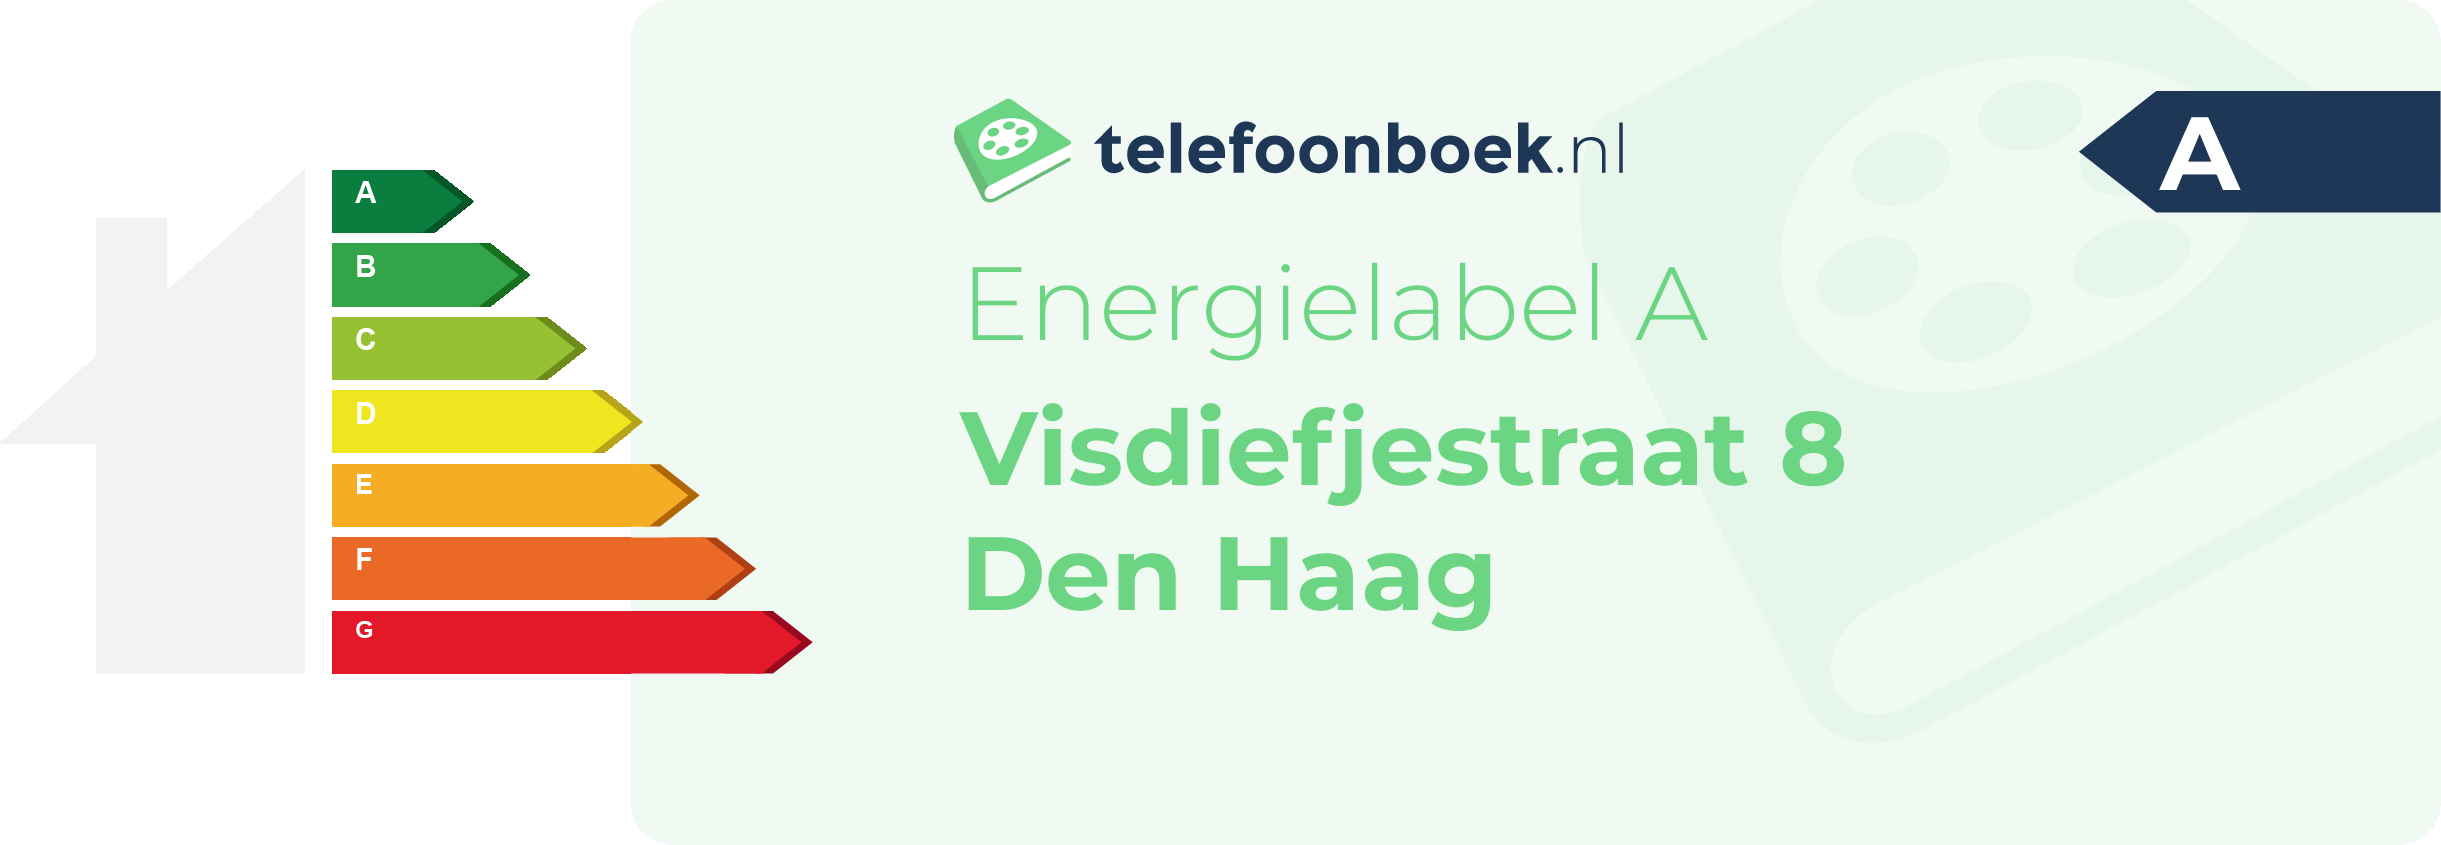 Energielabel Visdiefjestraat 8 Den Haag